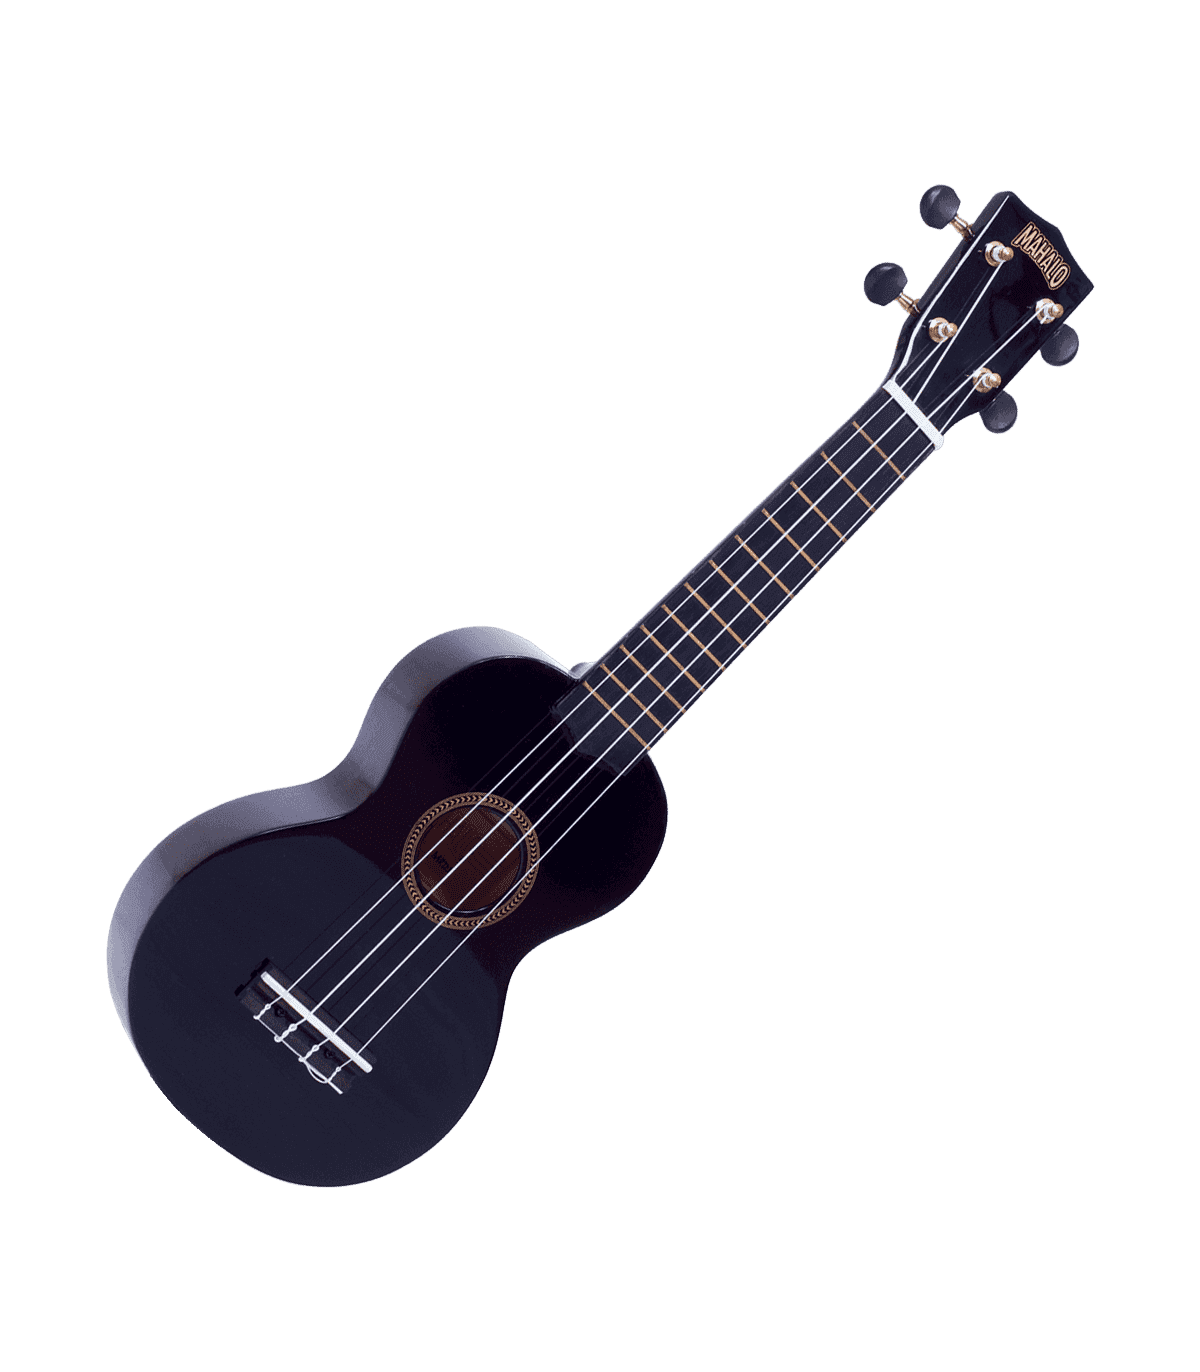 RITTER housse ukulele tenor noir / rouge